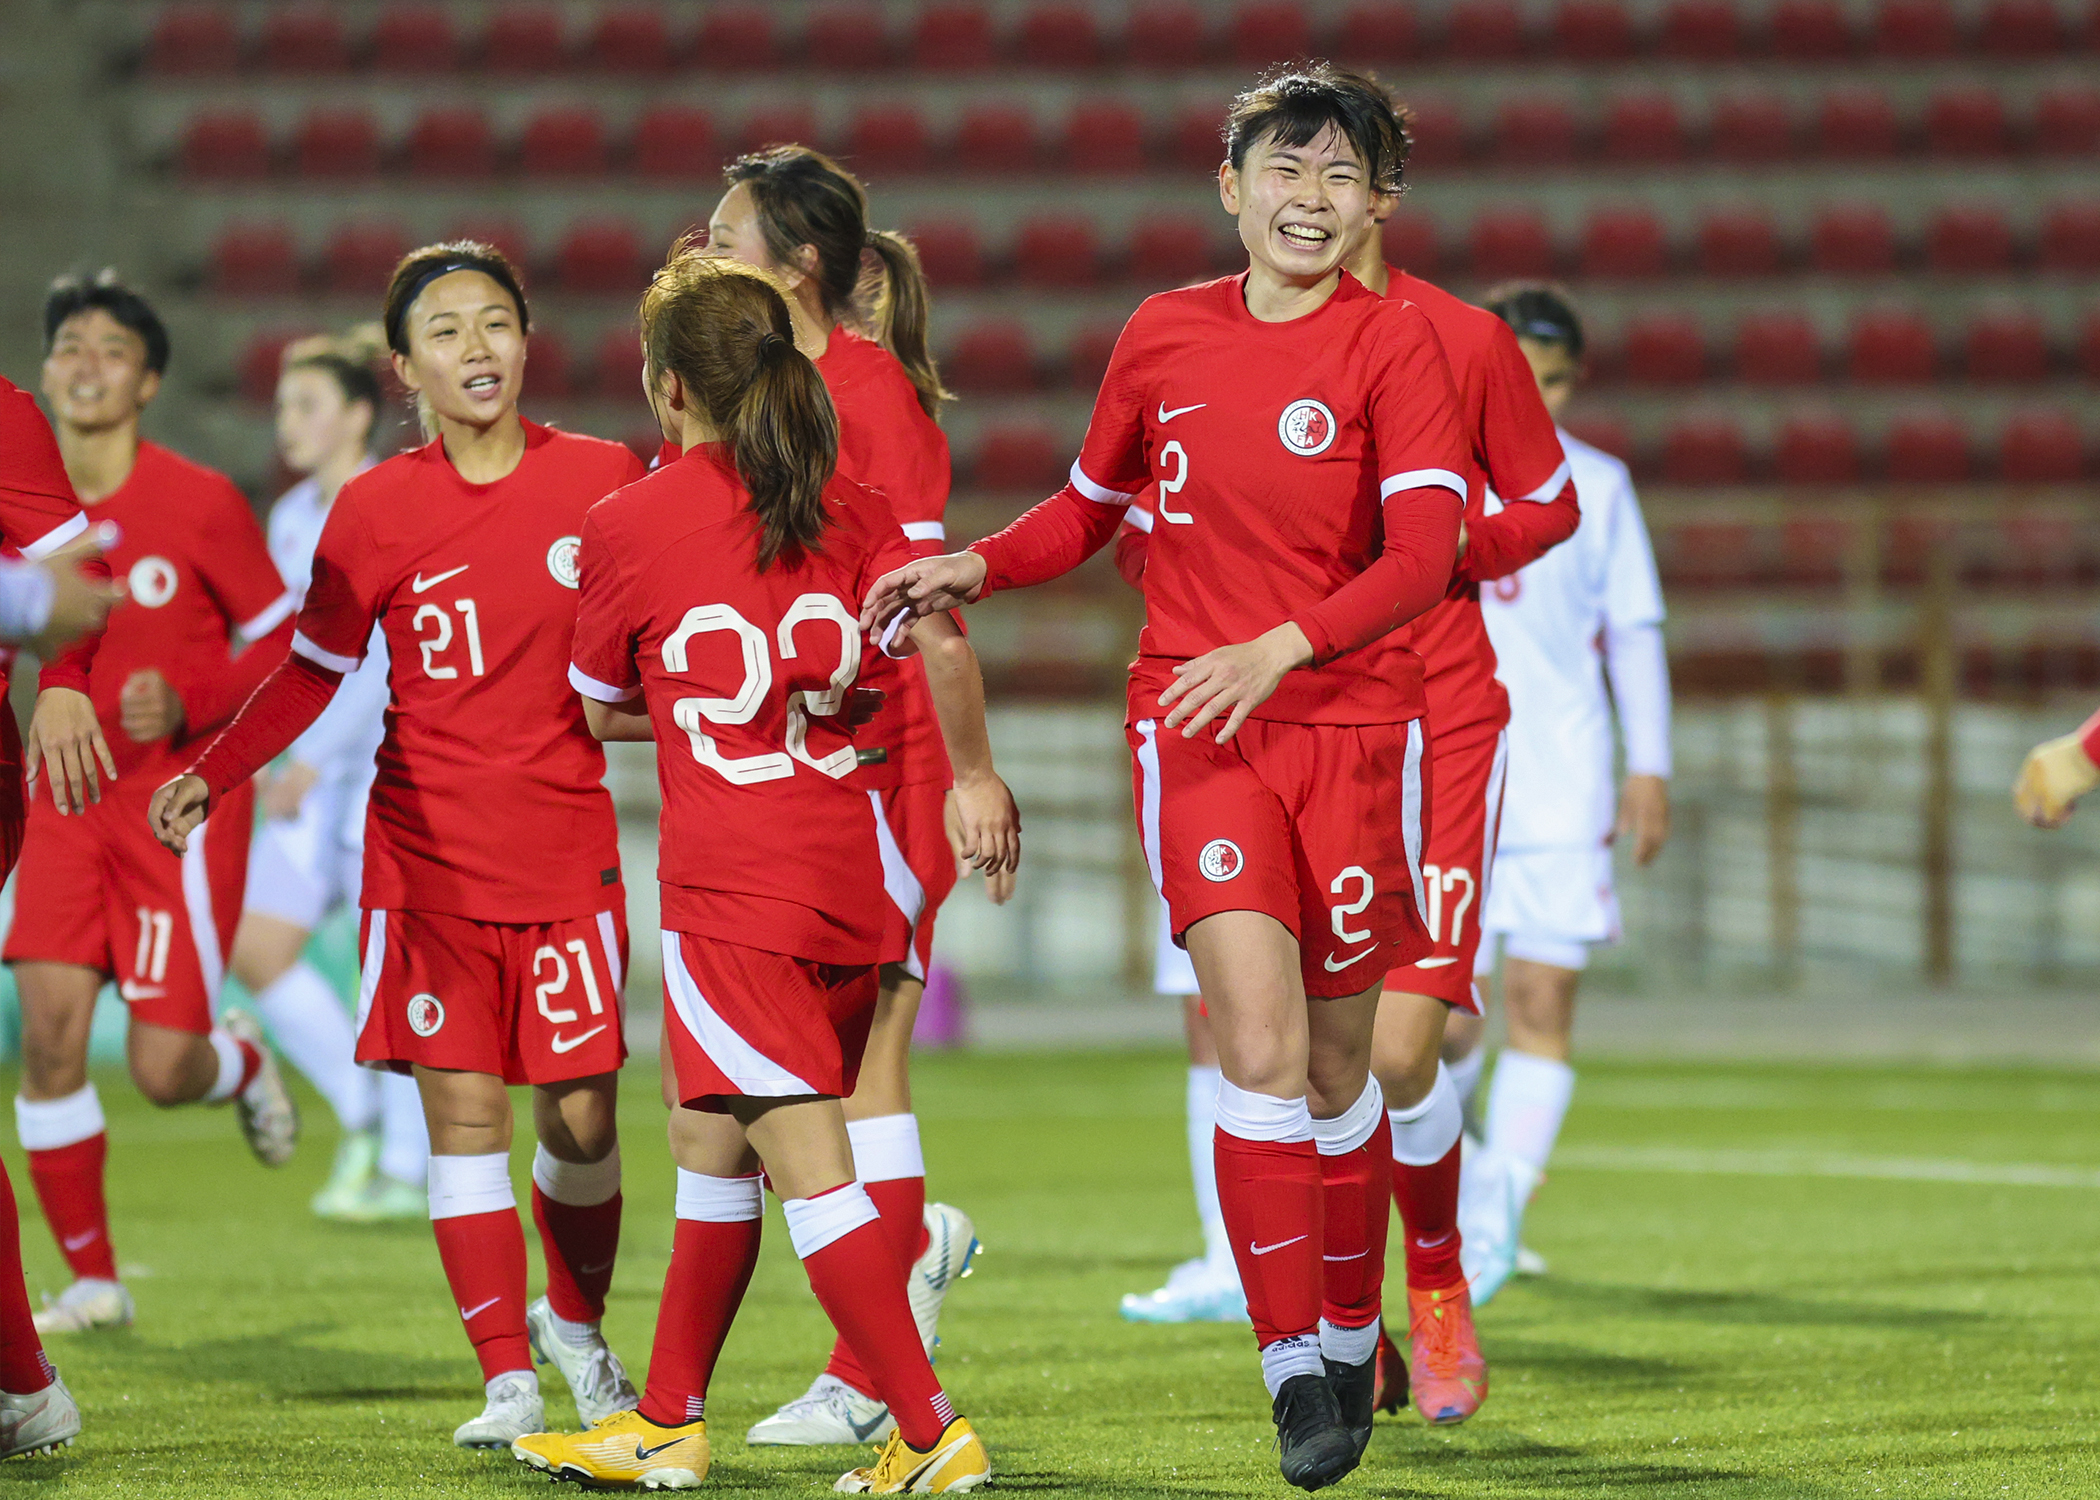 Сегодняшняя игра россии. Женский футбол. Женская сборная игра. Женская футбольная команда Таджикистана. Женщины футболисты.